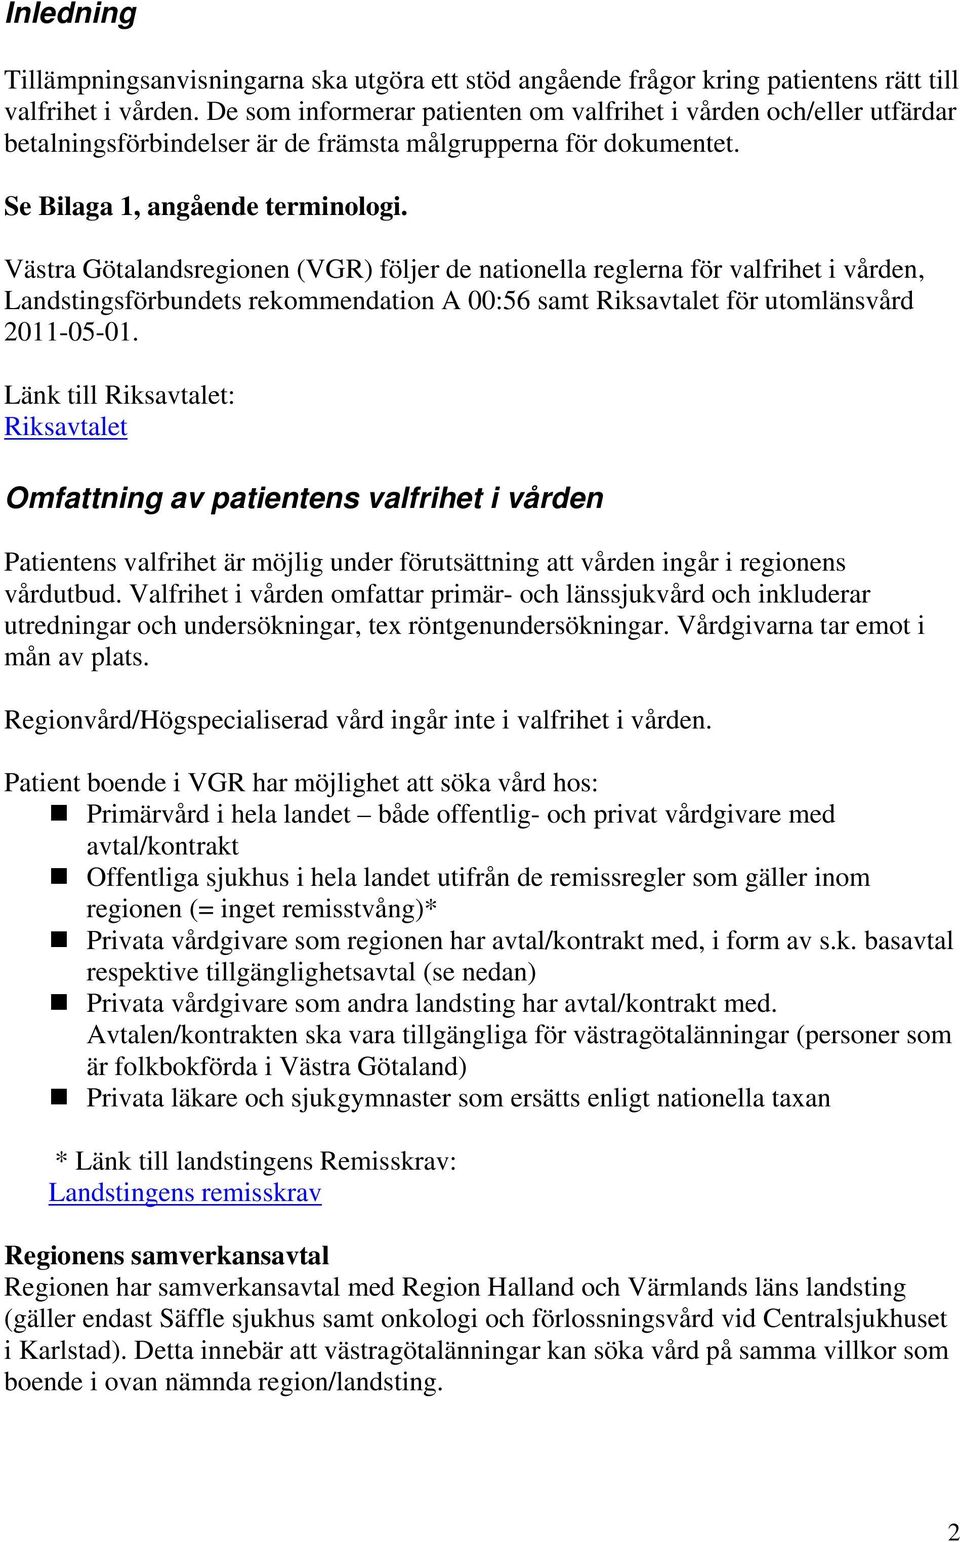 Västra Götalandsregionen (VGR) följer de nationella reglerna för valfrihet i vården, Landstingsförbundets rekommendation A 00:56 samt Riksavtalet för utomlänsvård 2011-05-01.